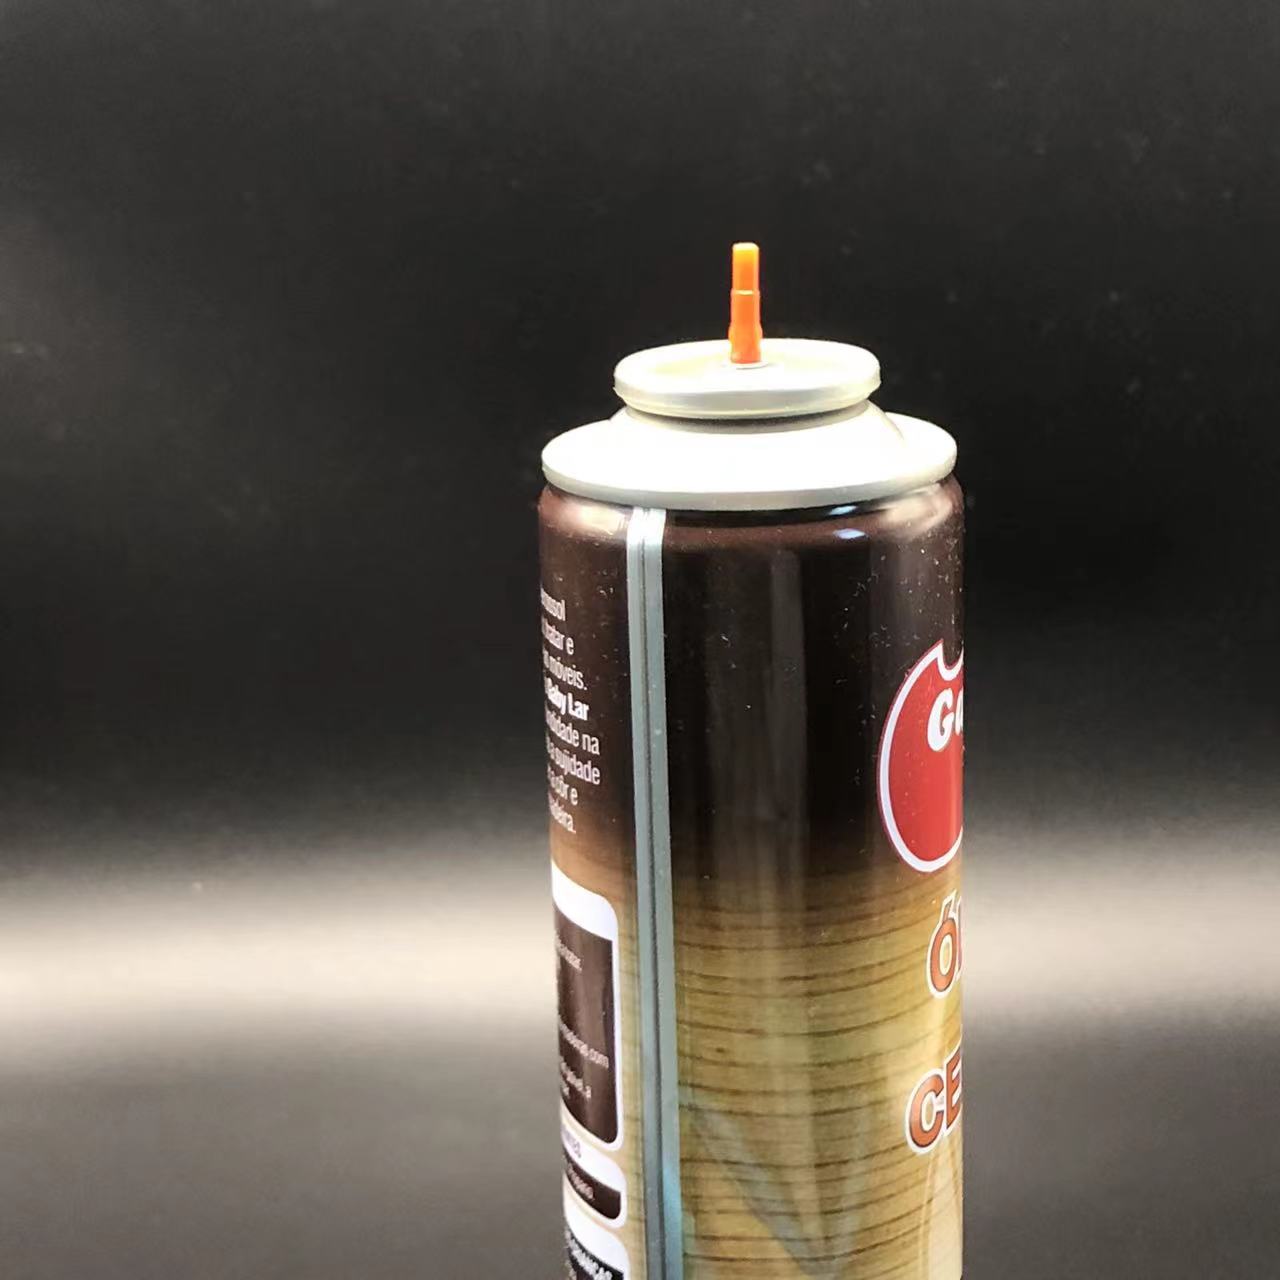 Válvula de reabastecimento a gás spray aerossol Solução de reabastecimento conveniente e confiável